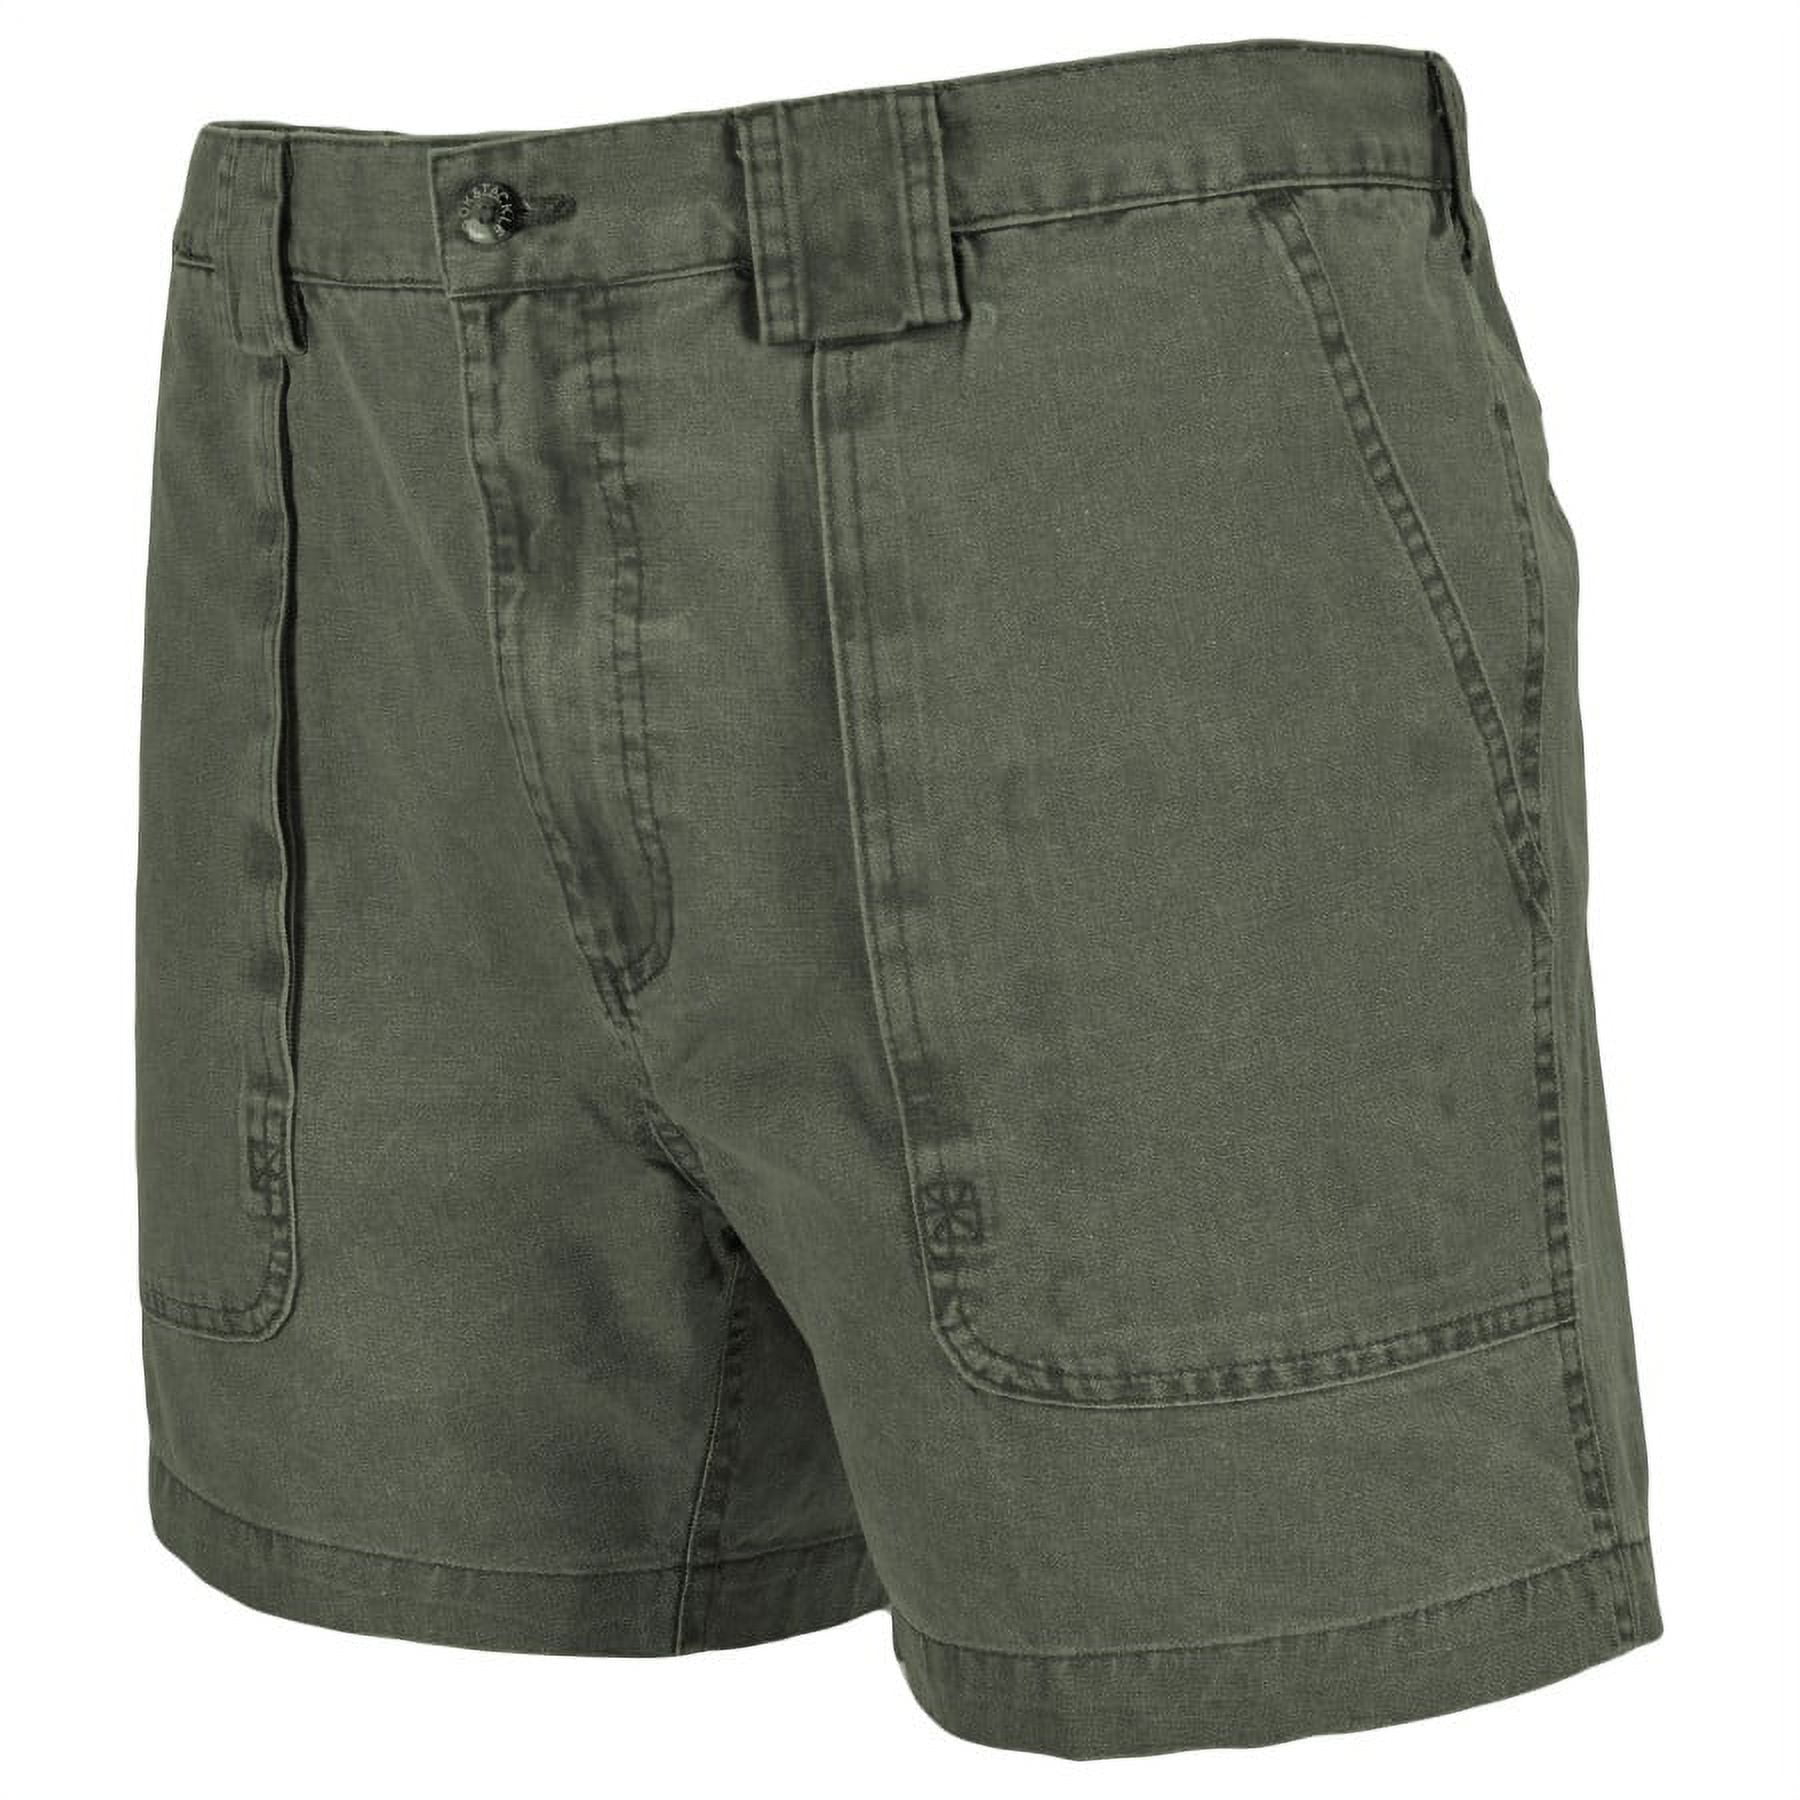 Hook & Tackle Men's Original Beer Can Island Shorts, Olive, 32